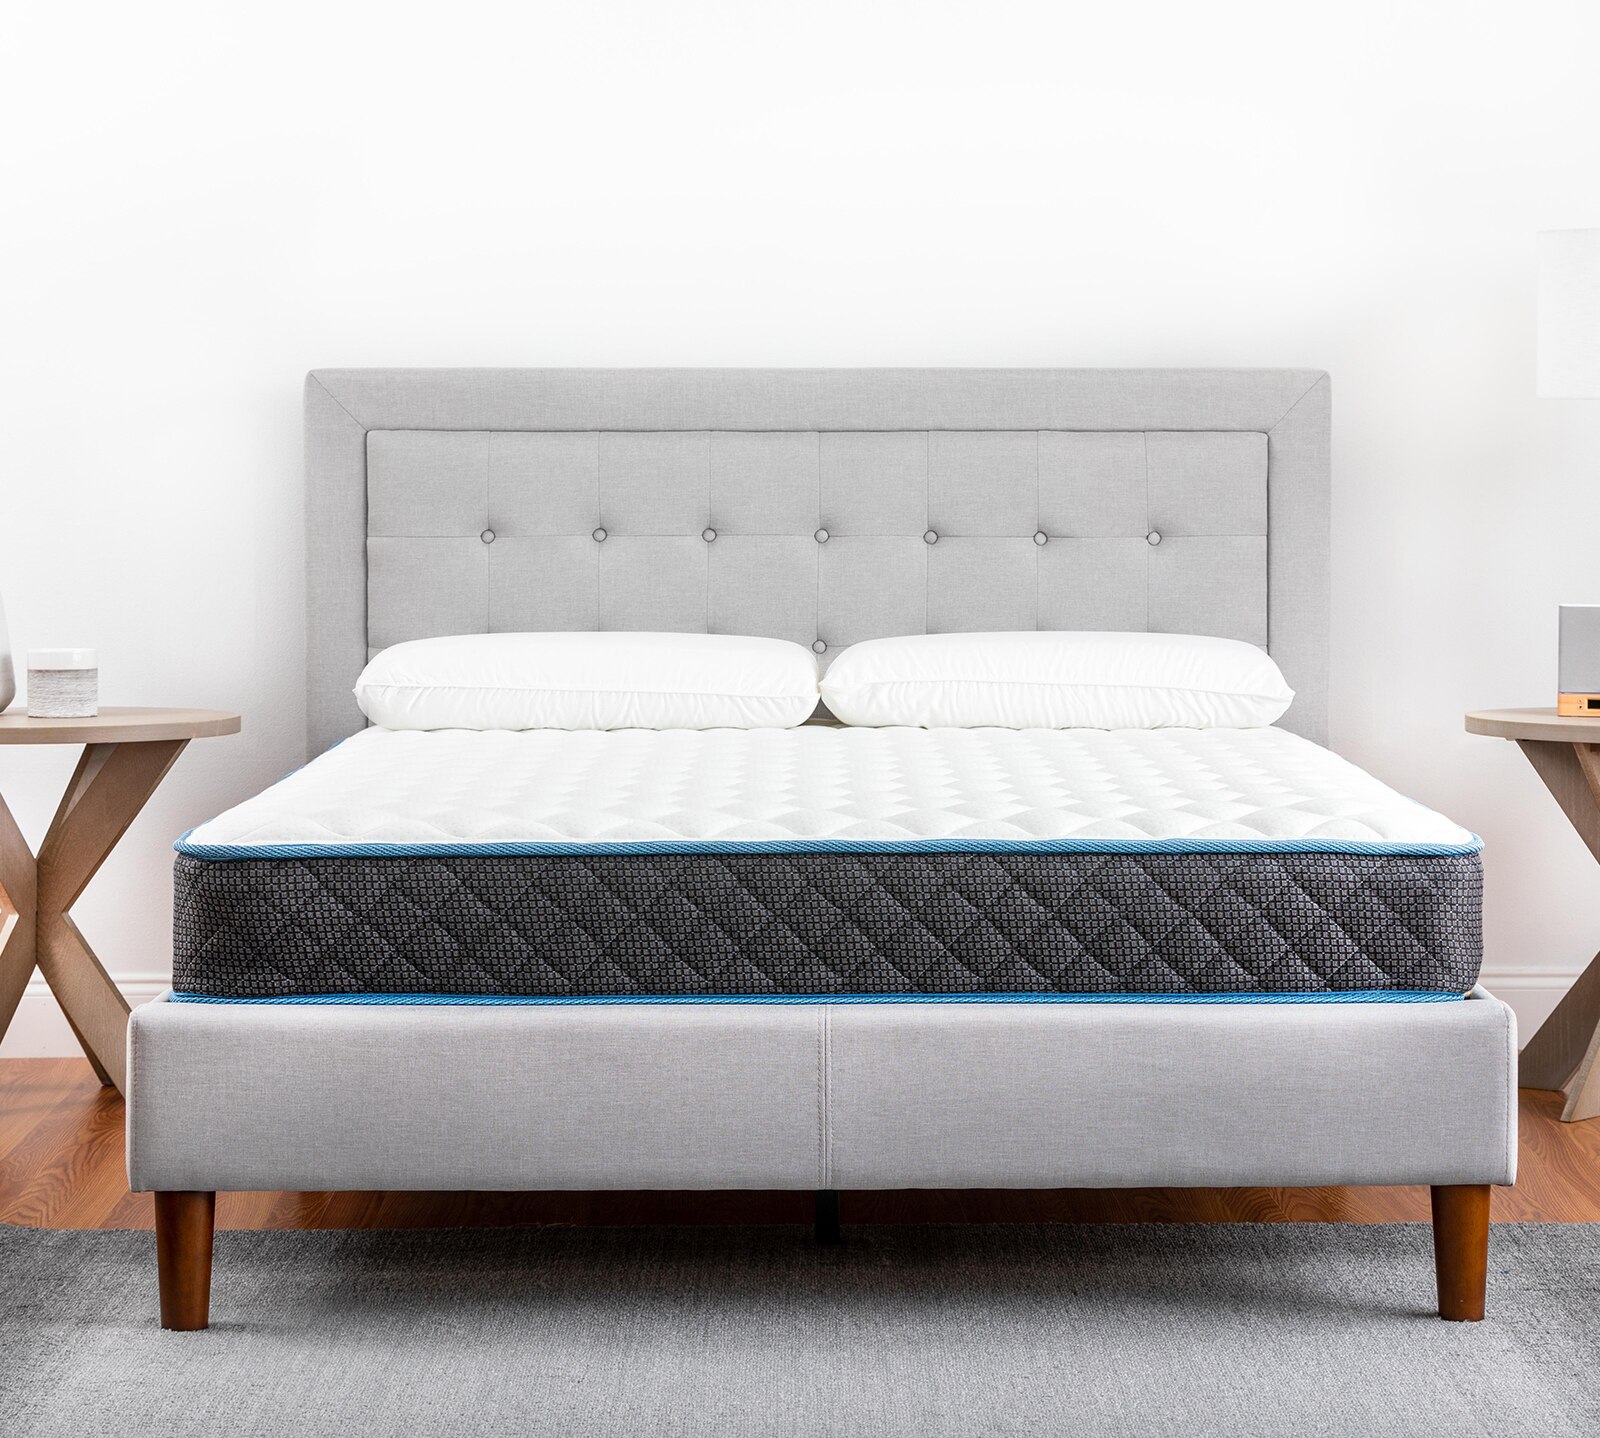 mattress firm sleepys calm reviews